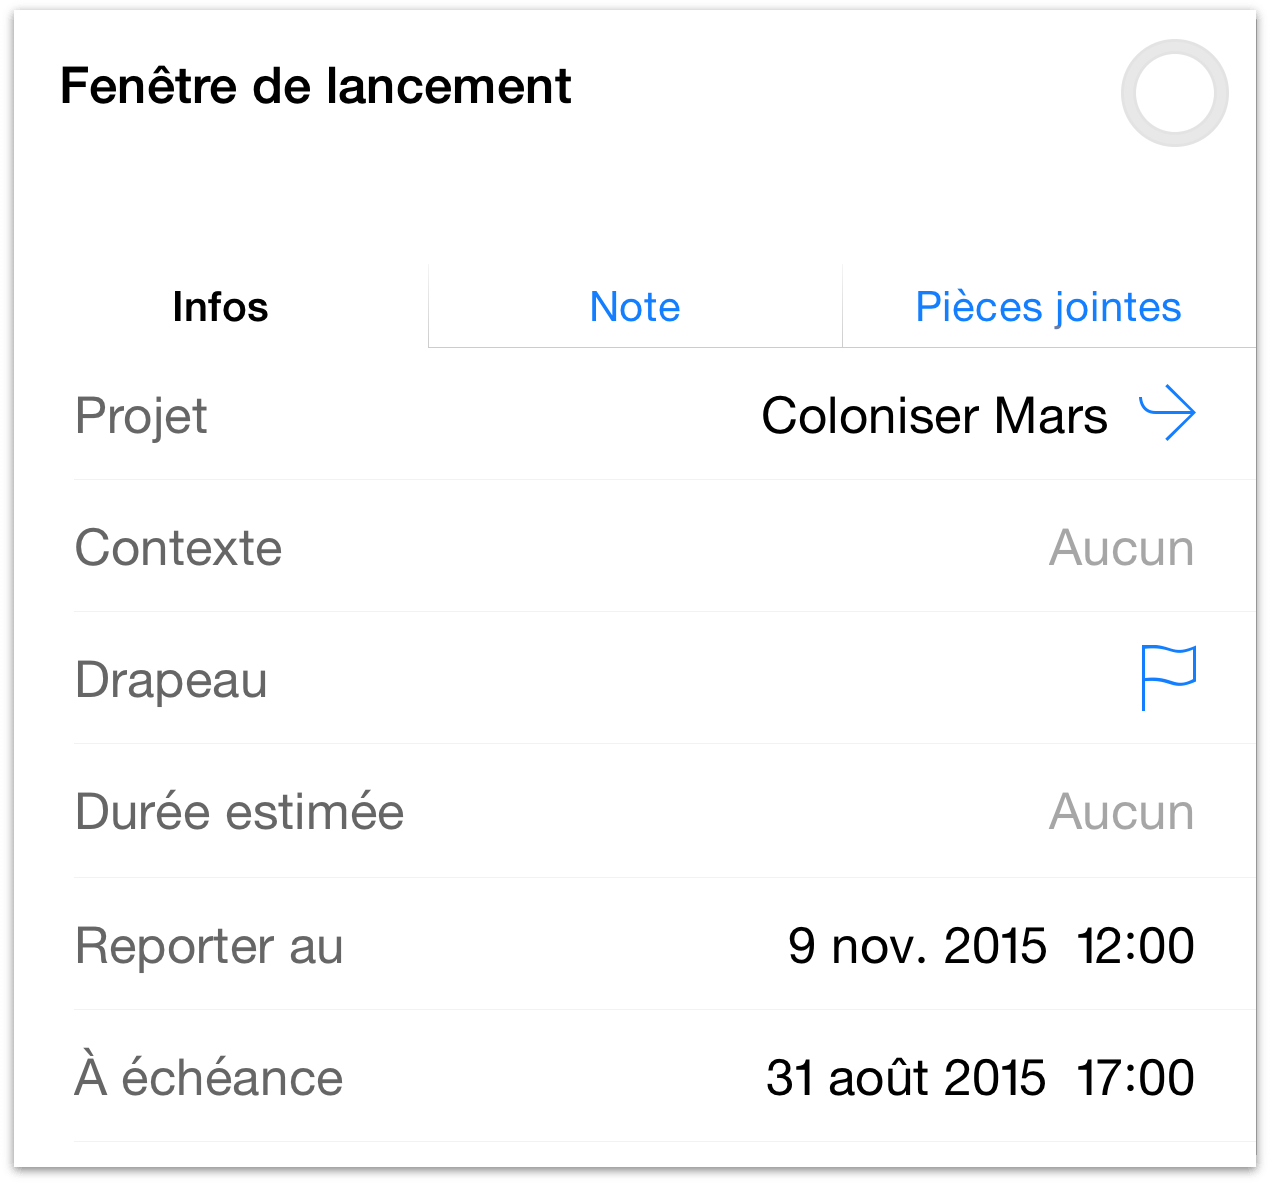 Création d'une action Fenêtre de lancement dans le projet Coloniser Mars, située entre une « date de report jusqu'à » et une date d'échéance.